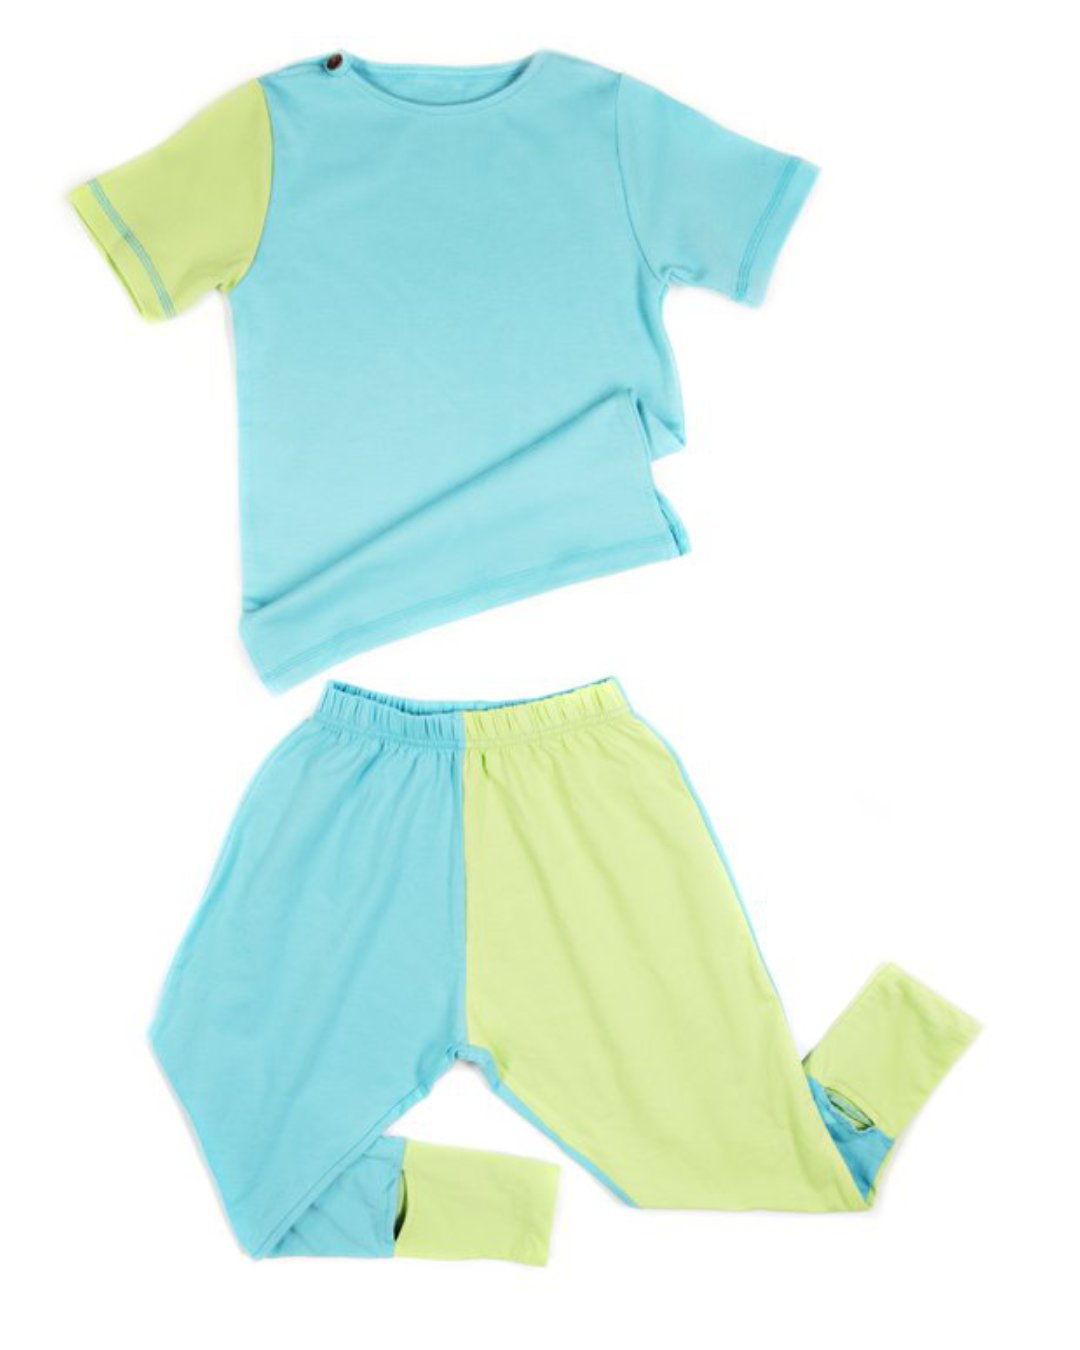 Schlafanzug für Kinder mit kurzärmligen Oberteil und langer Hose aus Bambusviskose in hellblau und grün